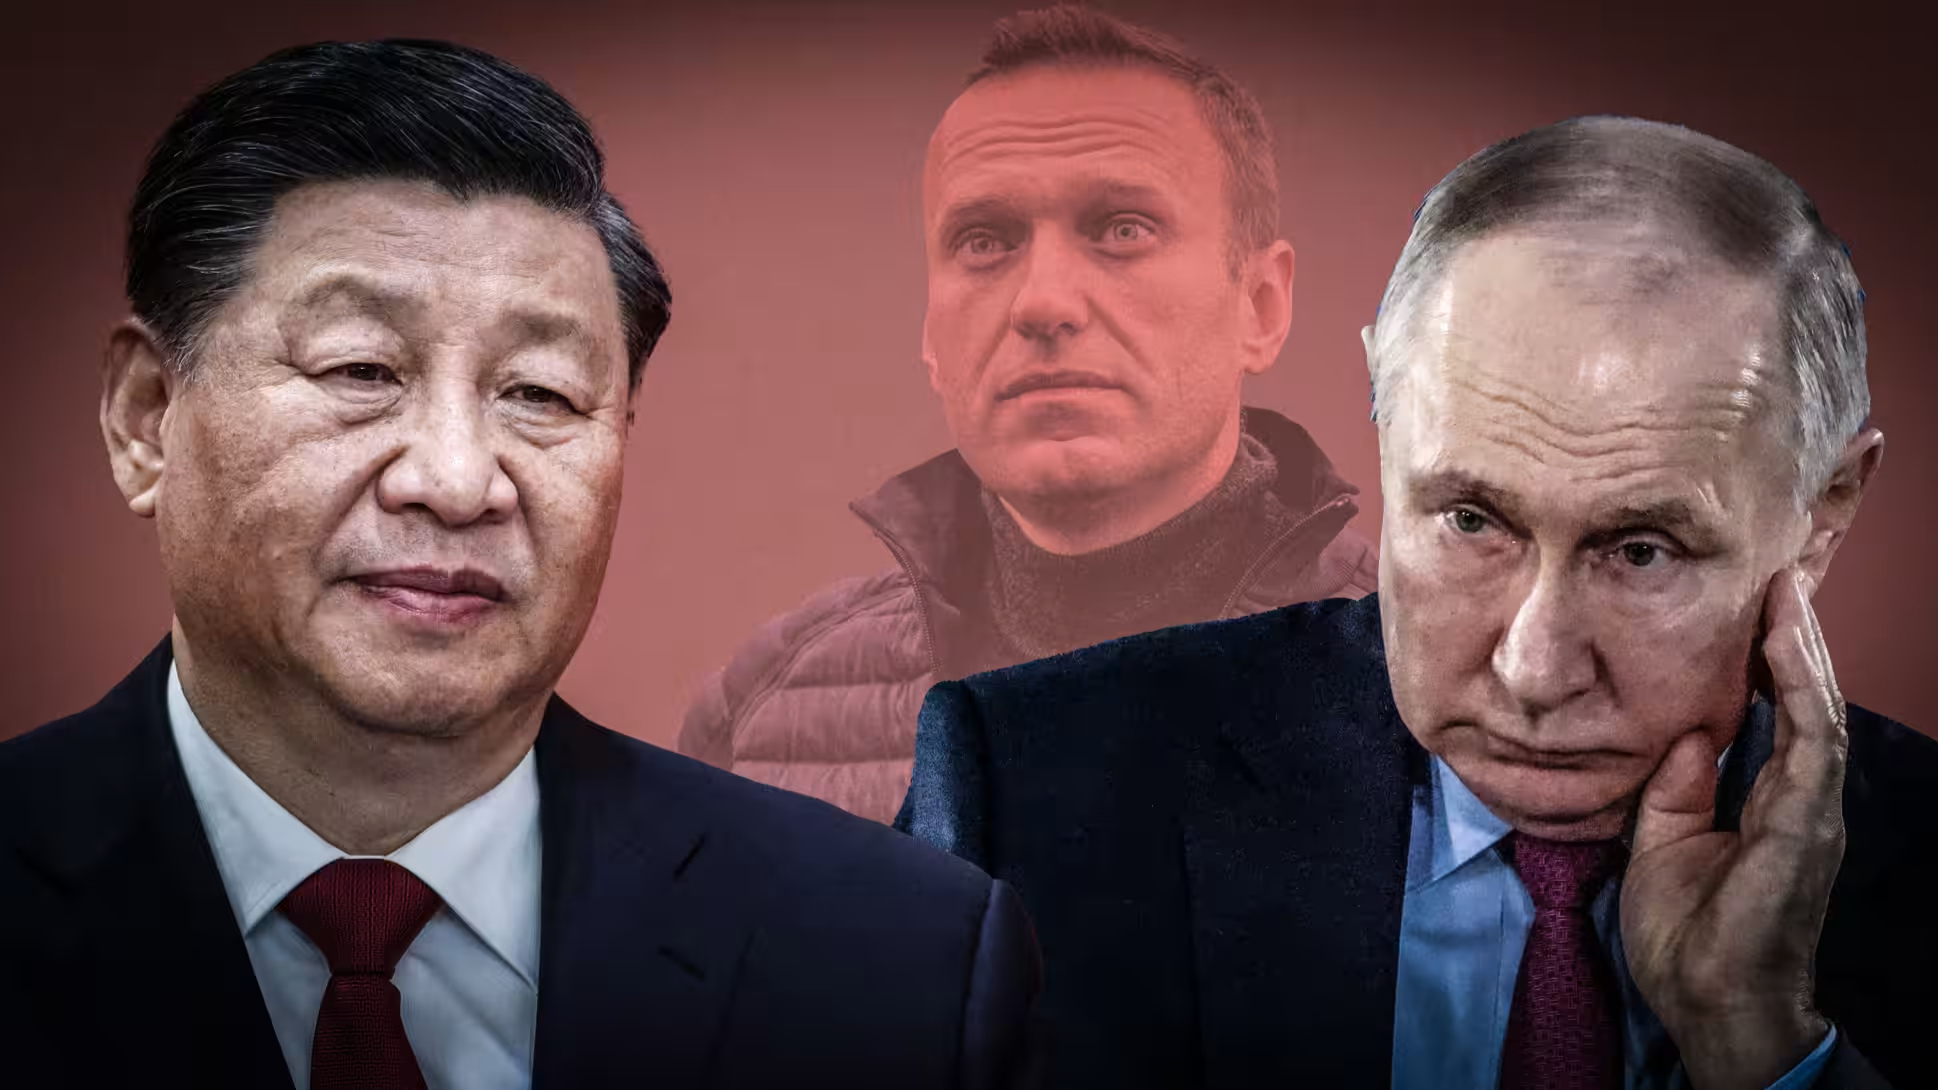 Từ trái: Tập Cận Bình, nhà đối lập Nga Alexei Navalny và Putin. Tập và Putin cùng chơi trò chơi chính trị: Không cho phép bất kỳ bất đồng chính kiến. Ảnh: Getty Images & Ryosuke Hinata - Nikkei edited